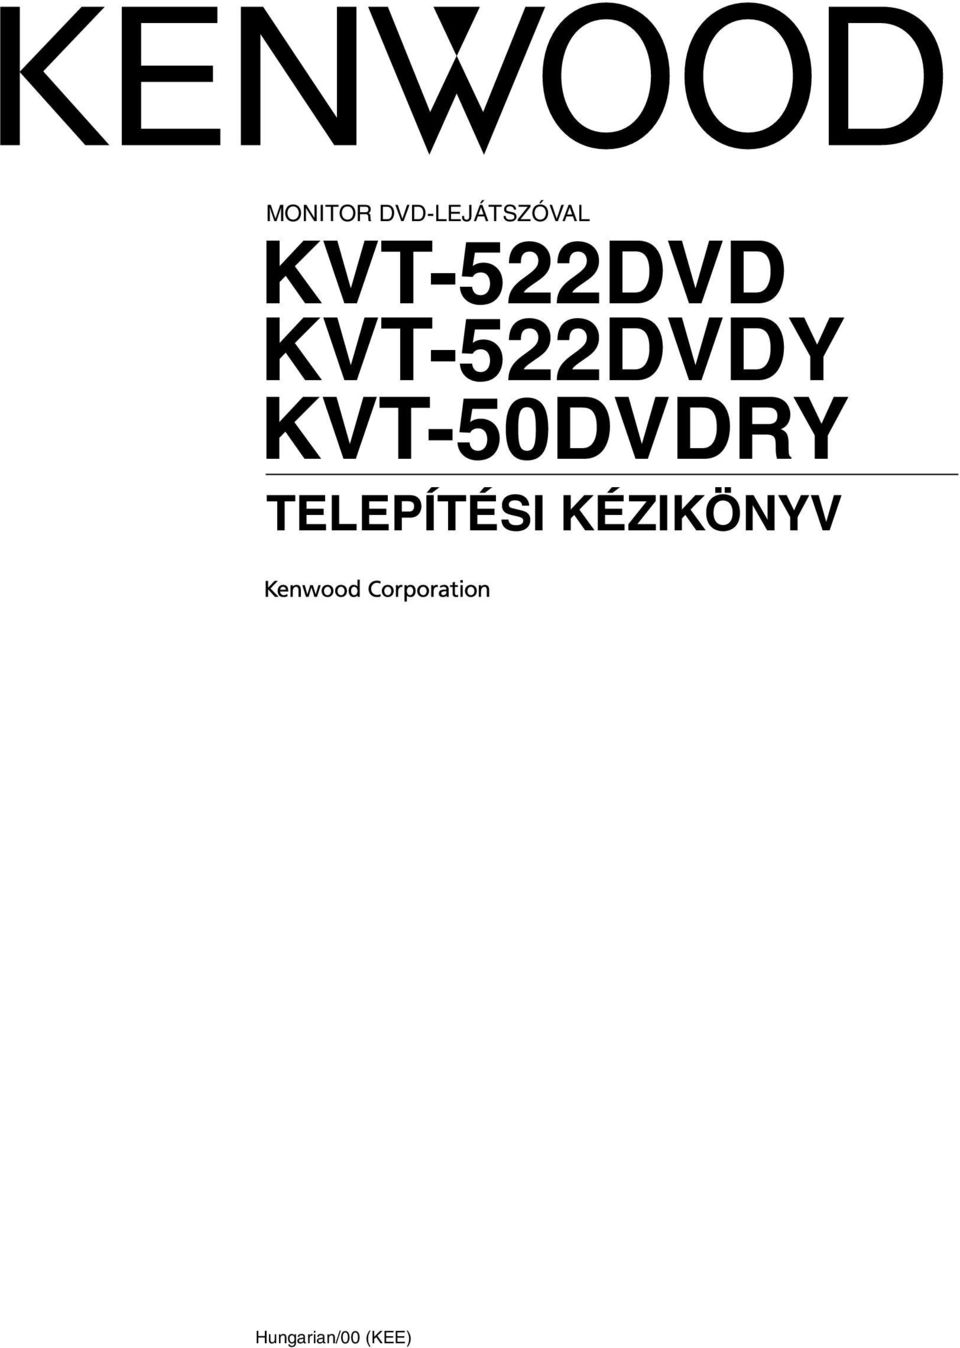 KVT-50DVDRY TELEPÍTÉSI